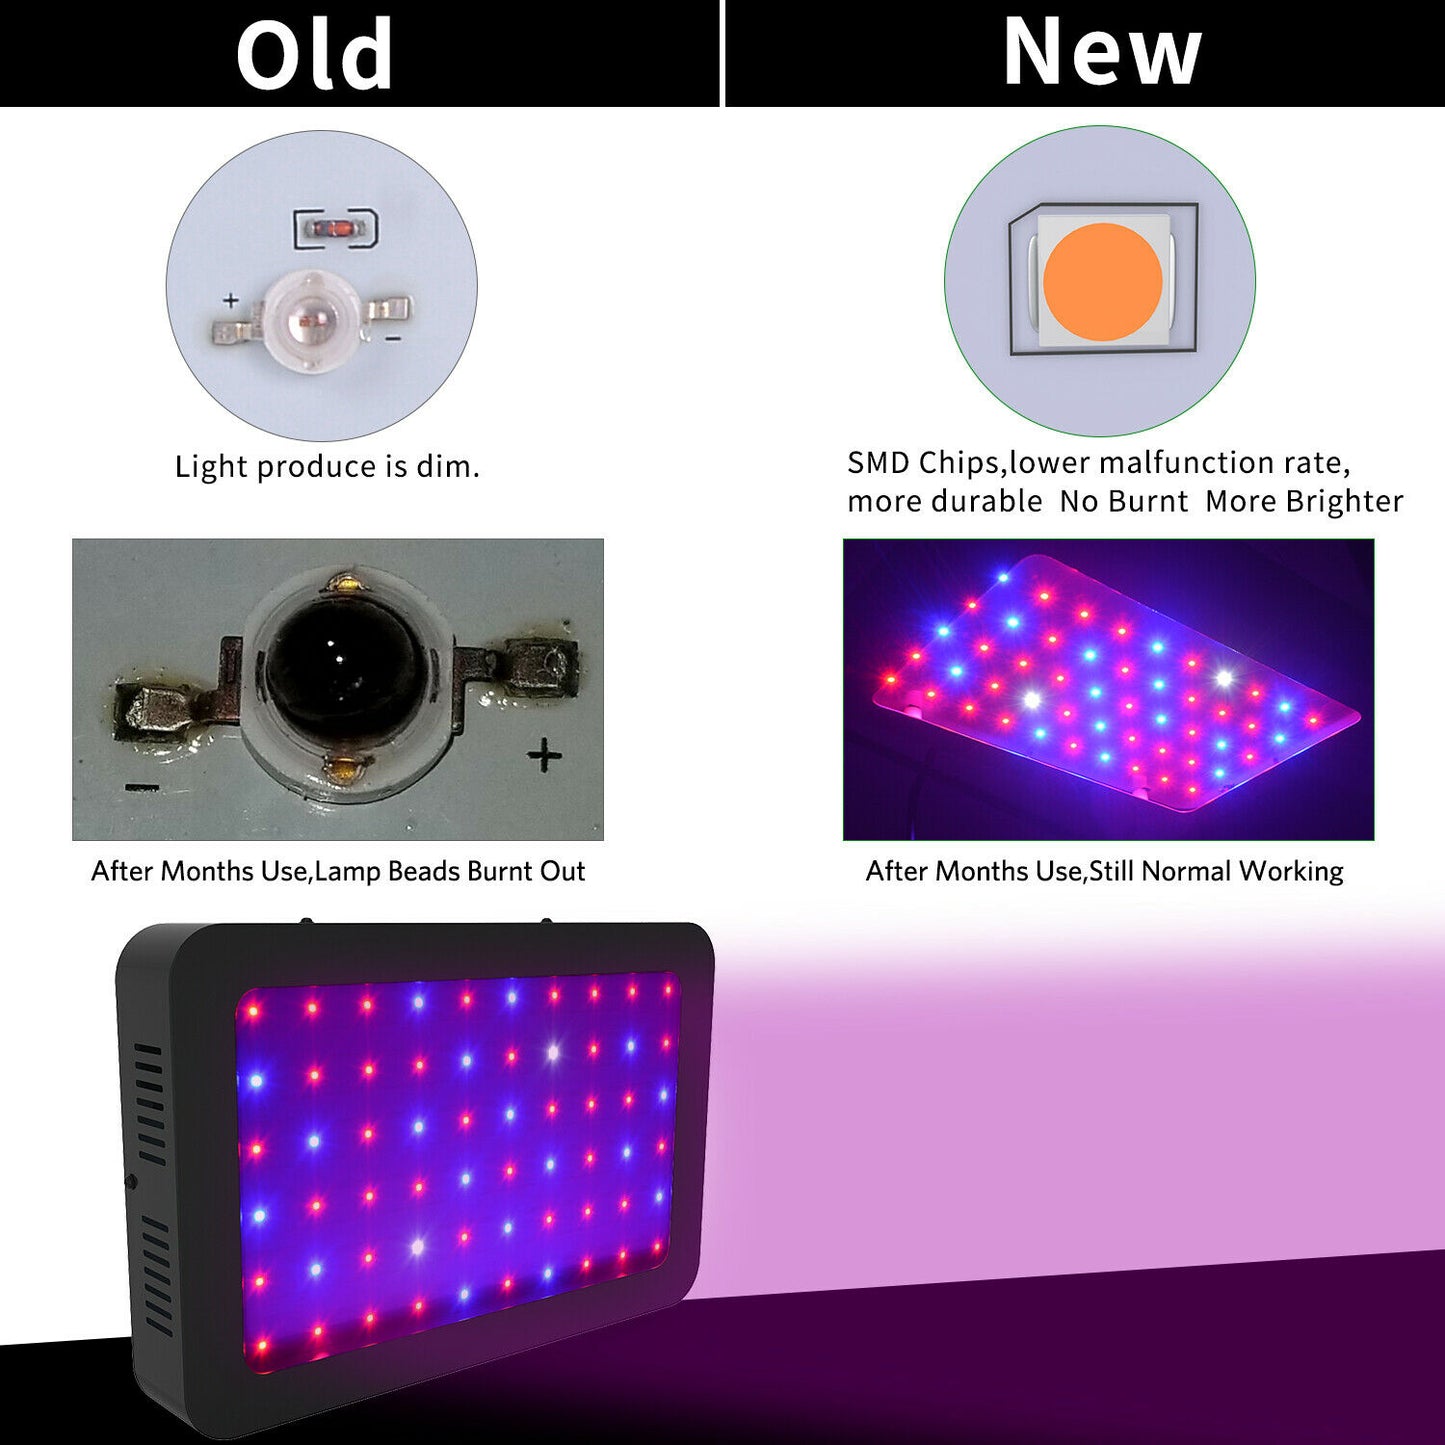 LED Grow Light Full Spectrum VEG&Bloom Dual Switch